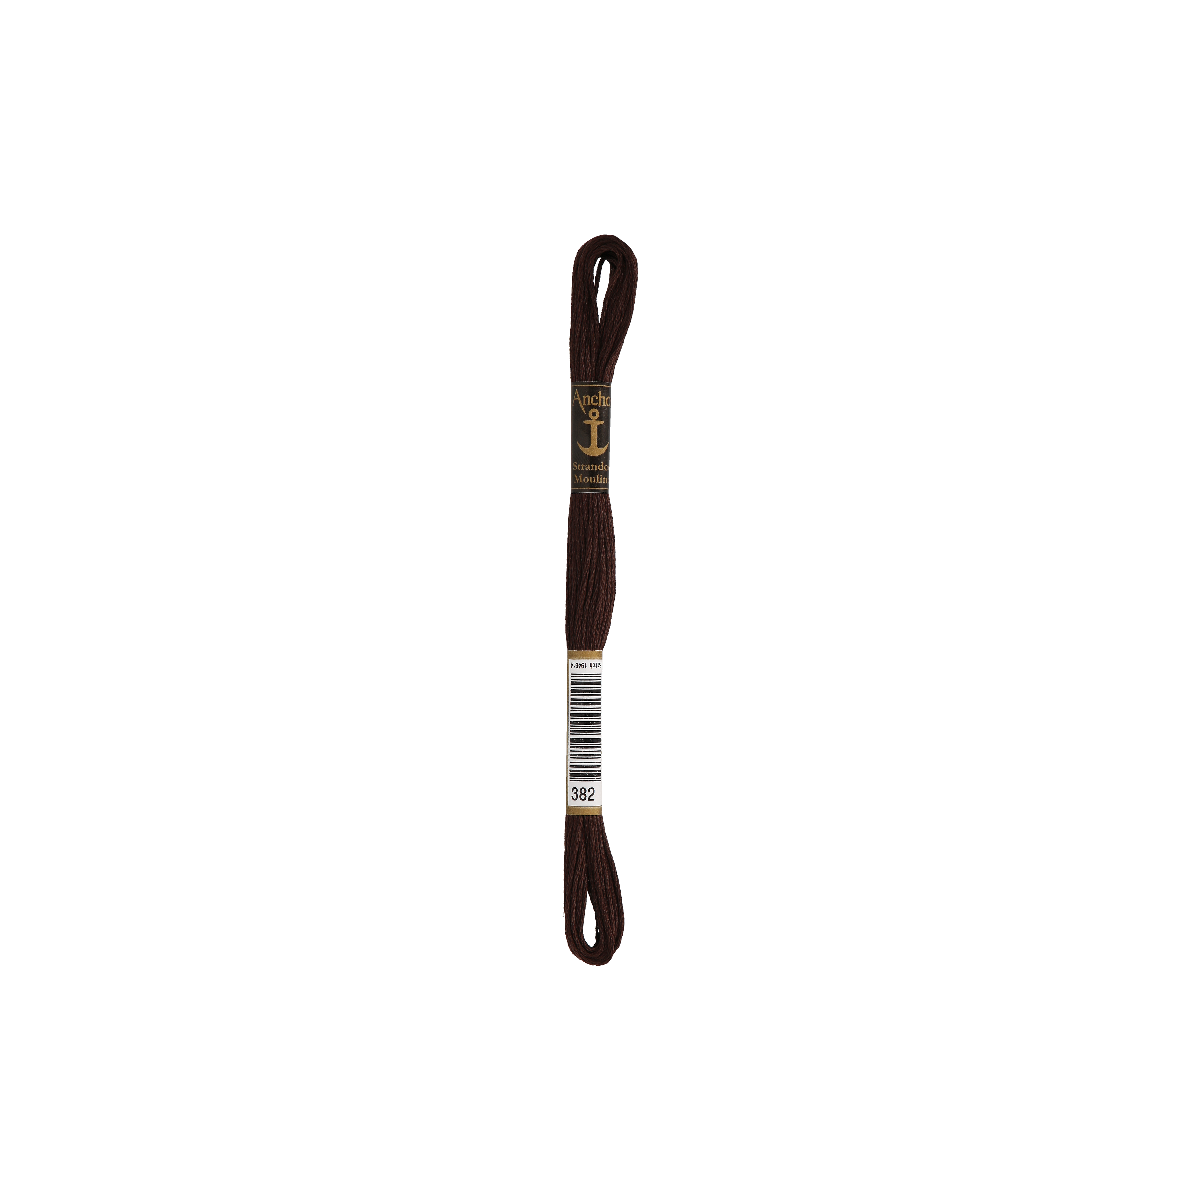 Anchor Sticktwist 8m, ebbenhout, katoen, kleur 382, 6-draads